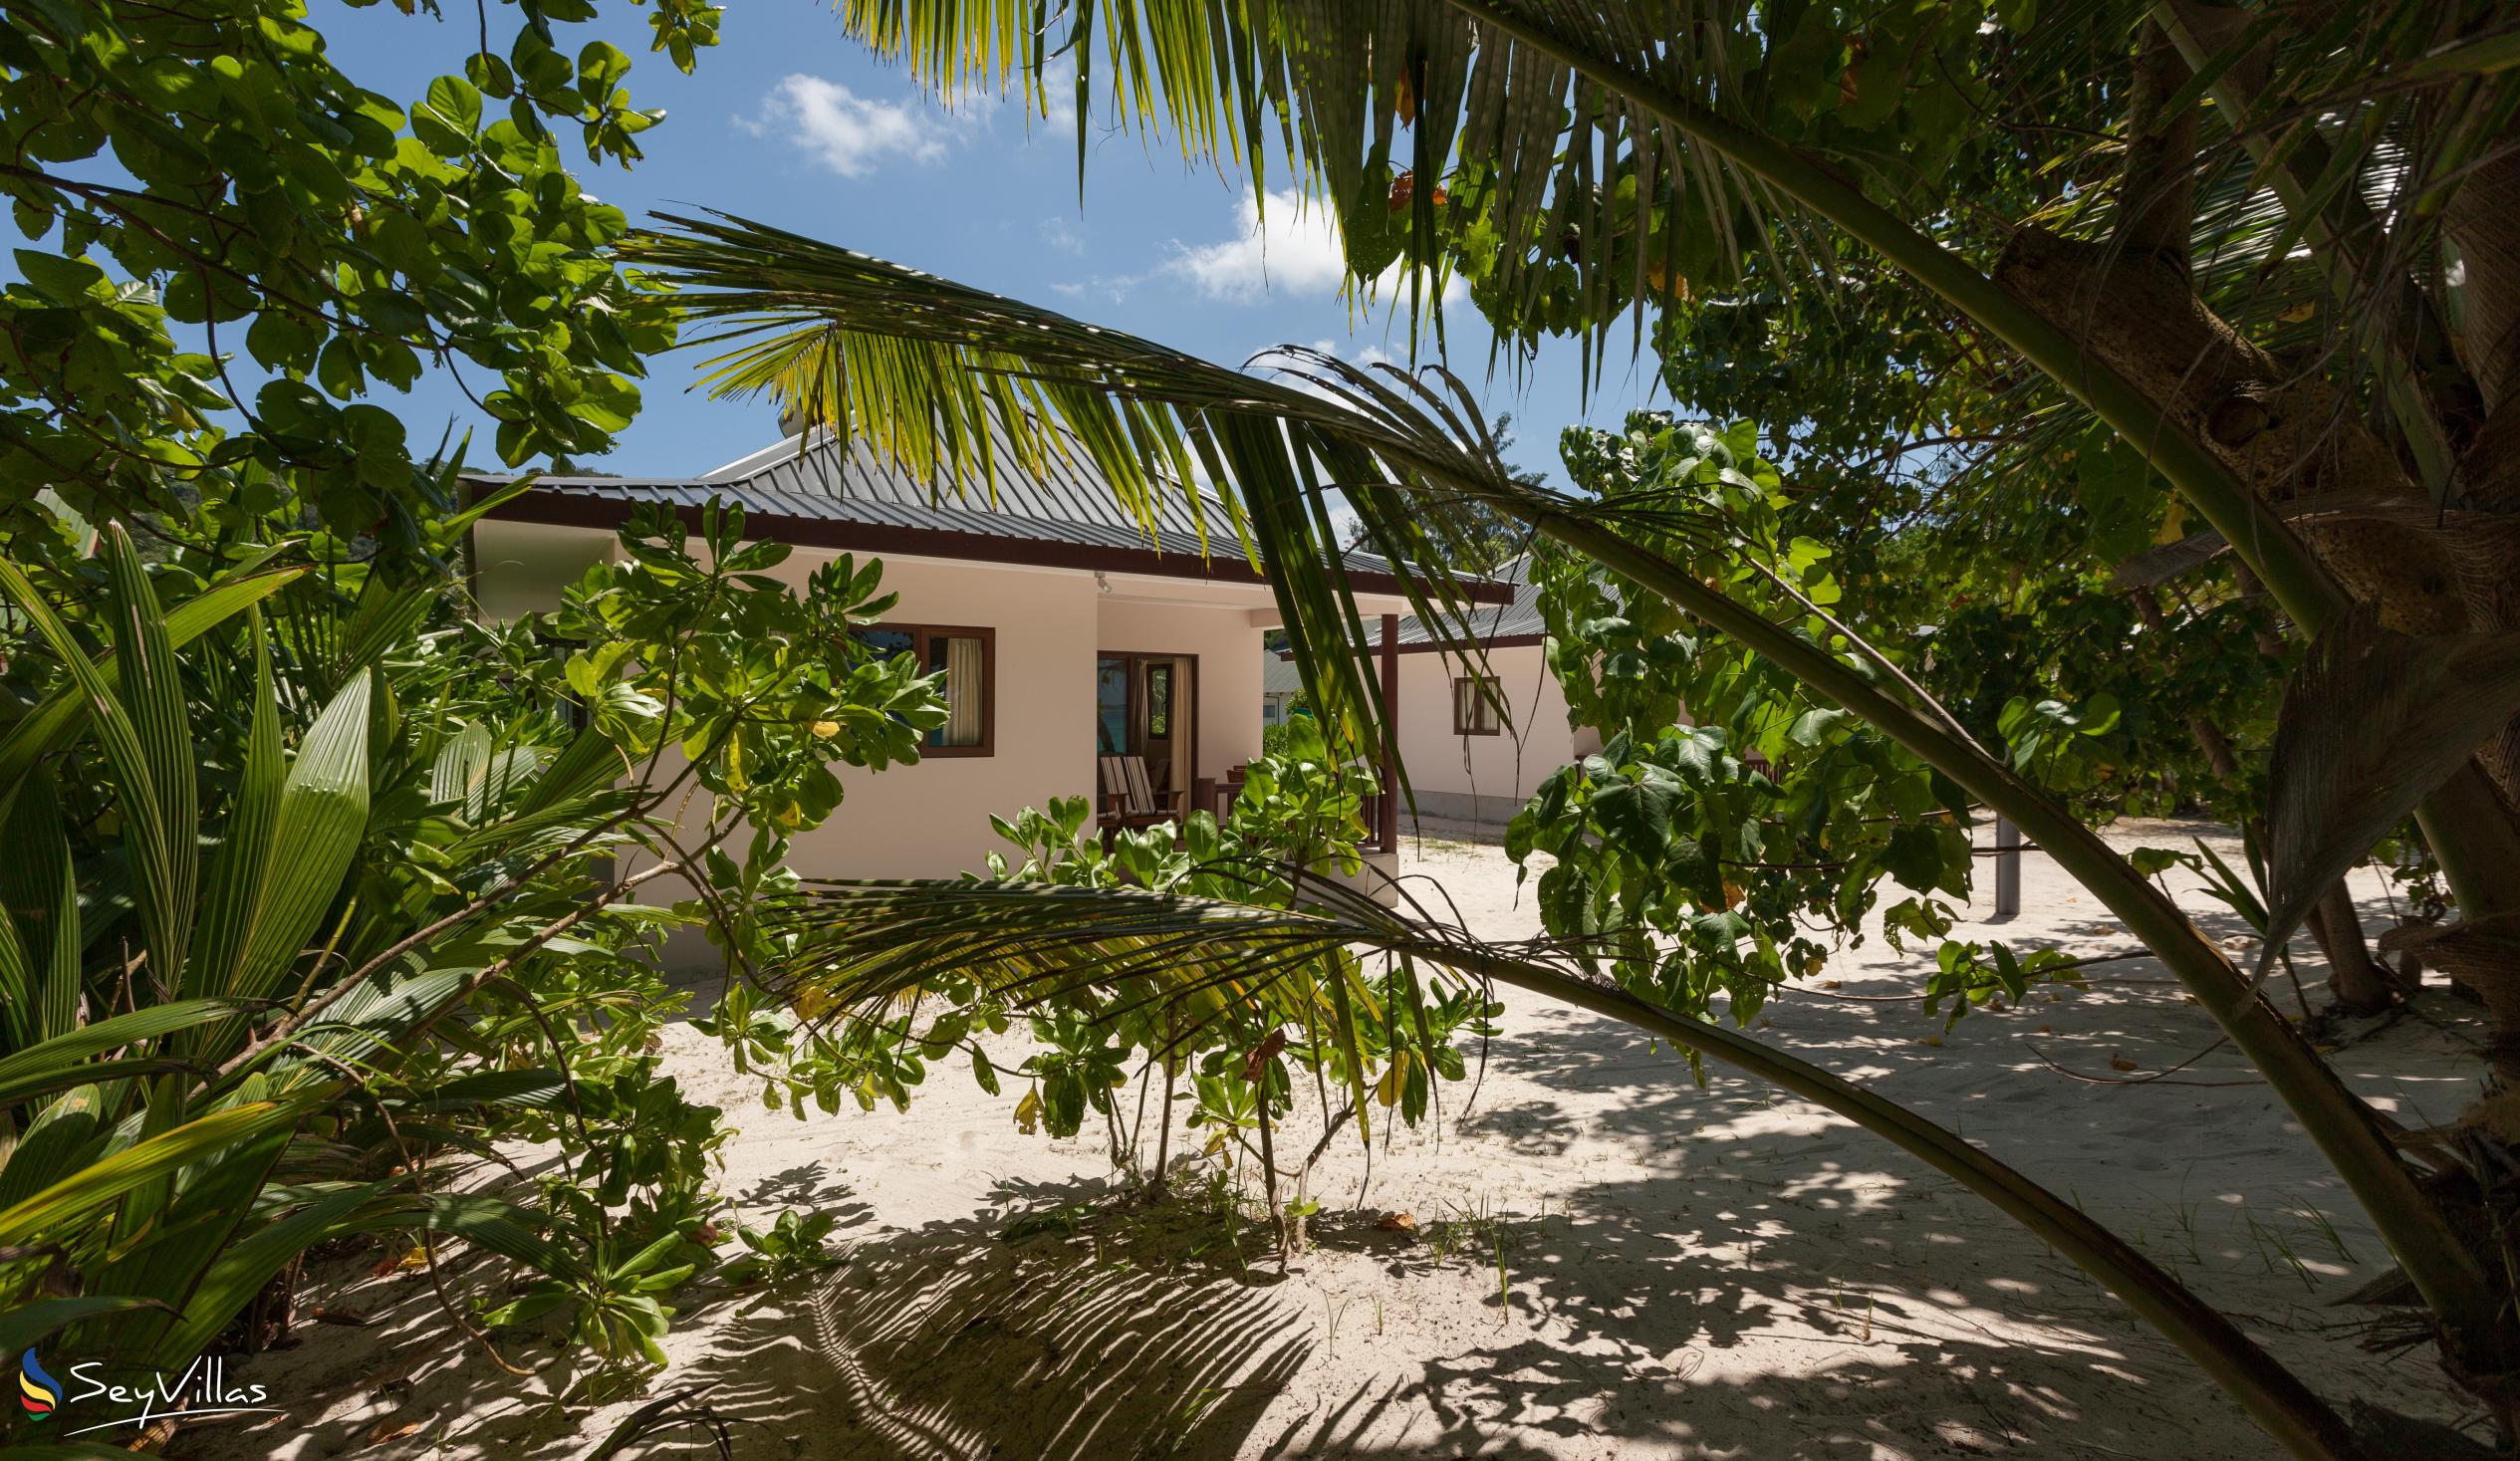 Foto 6: Villa Belle Plage - Aussenbereich - Praslin (Seychellen)